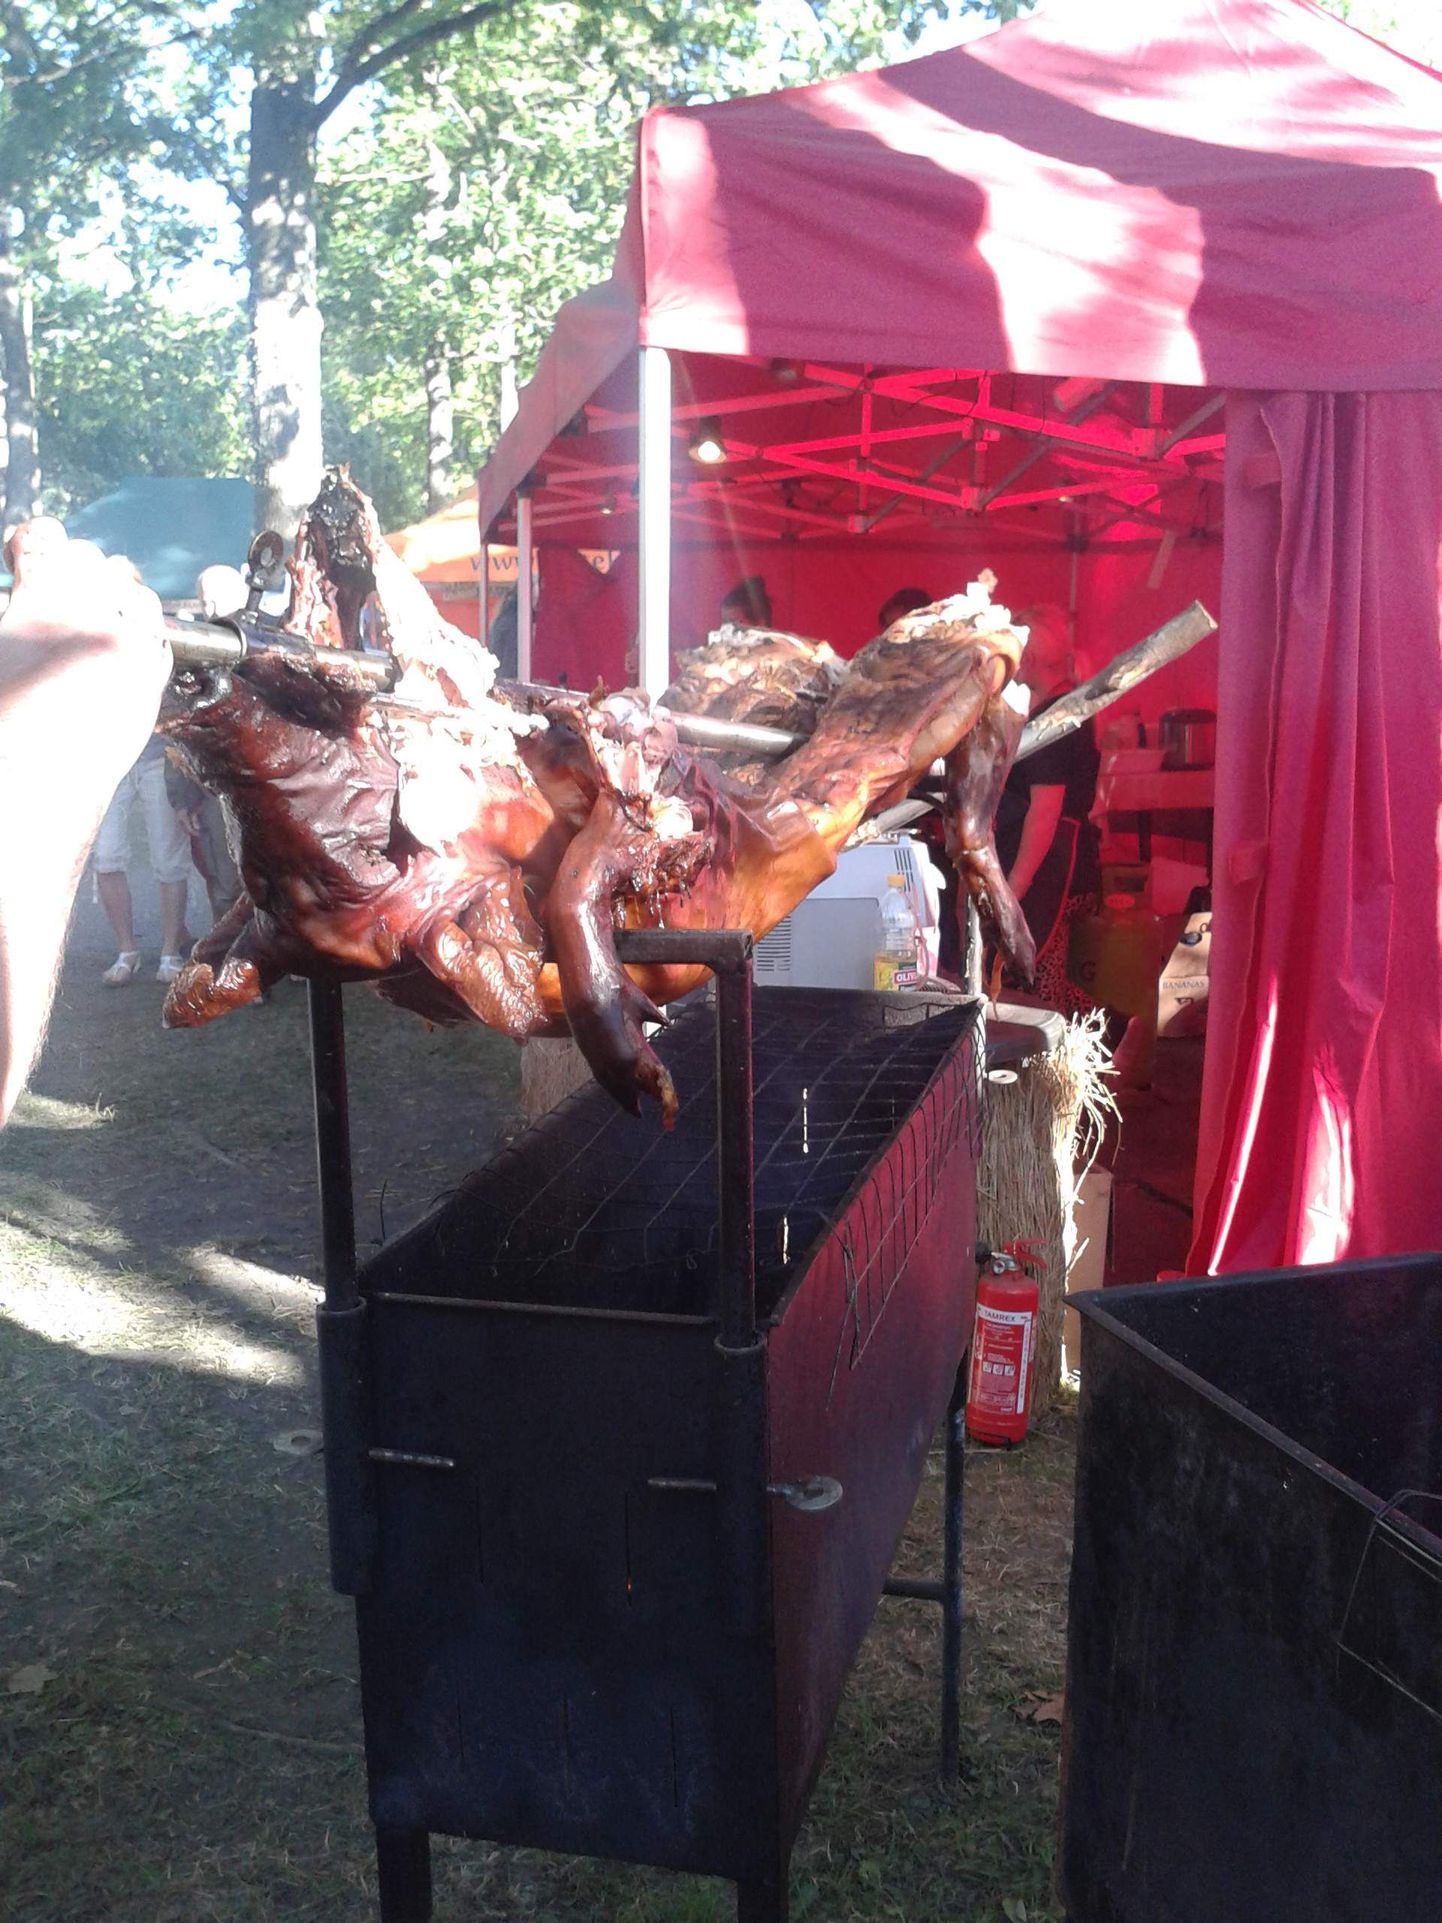 Liiga suur siga ei tahtnud grillile ära mahtuda.